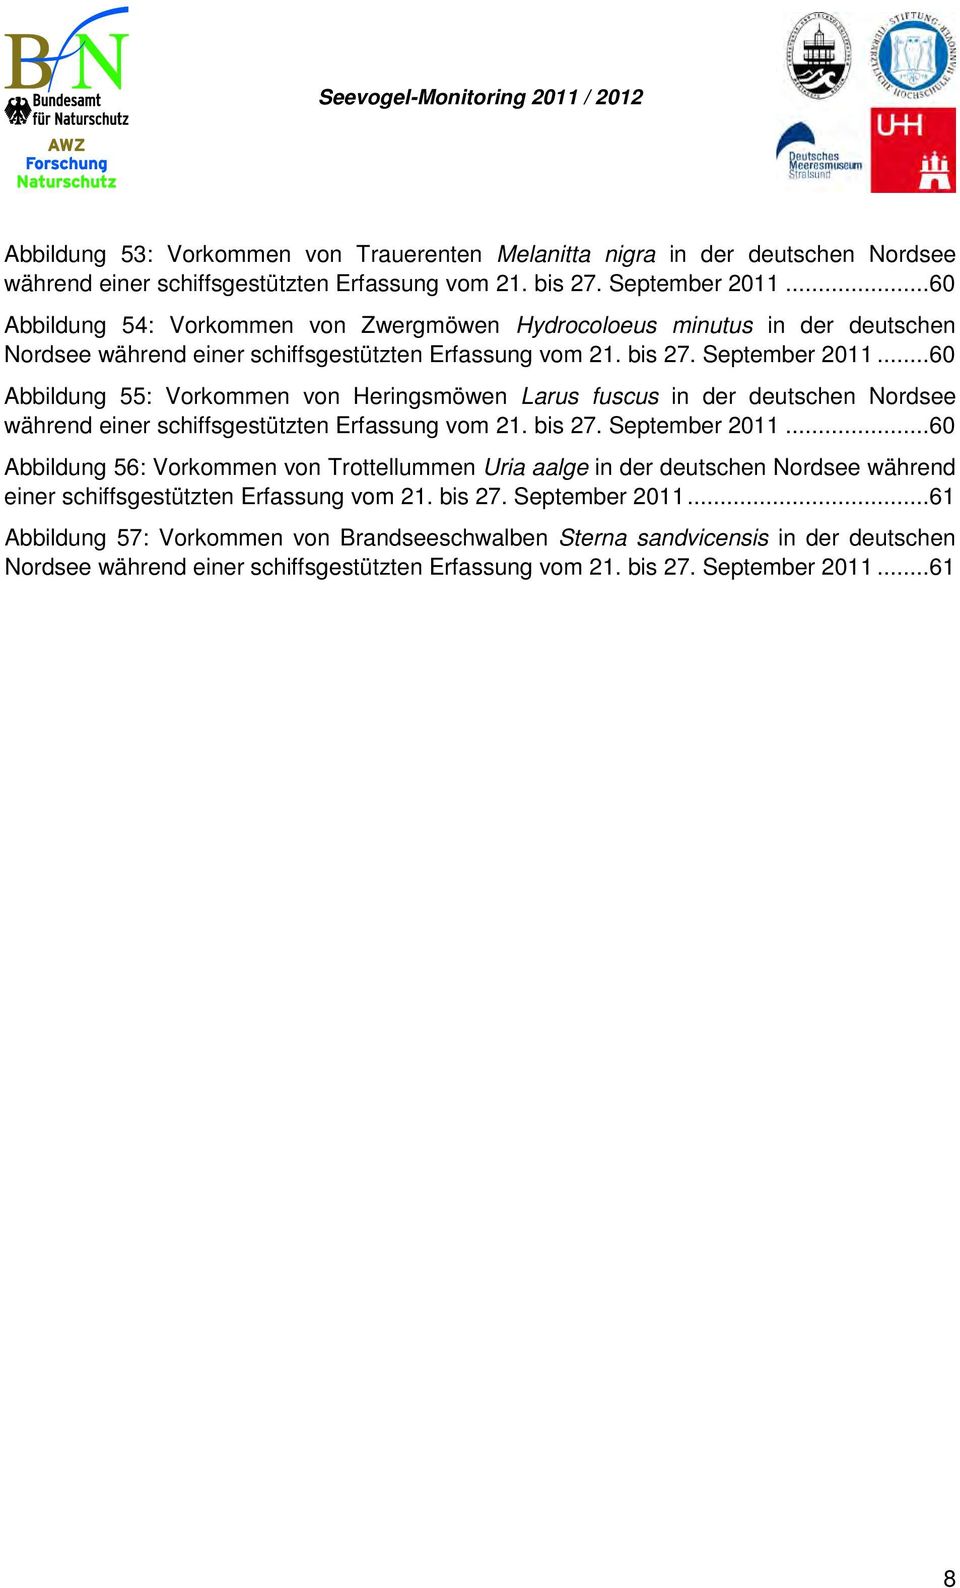 ..60 Abbildung 55: Vorkommen von Heringsmöwen Larus fuscus in der deutschen Nordsee während einer schiffsgestützten Erfassung vom 21. bis 27. September 2011.